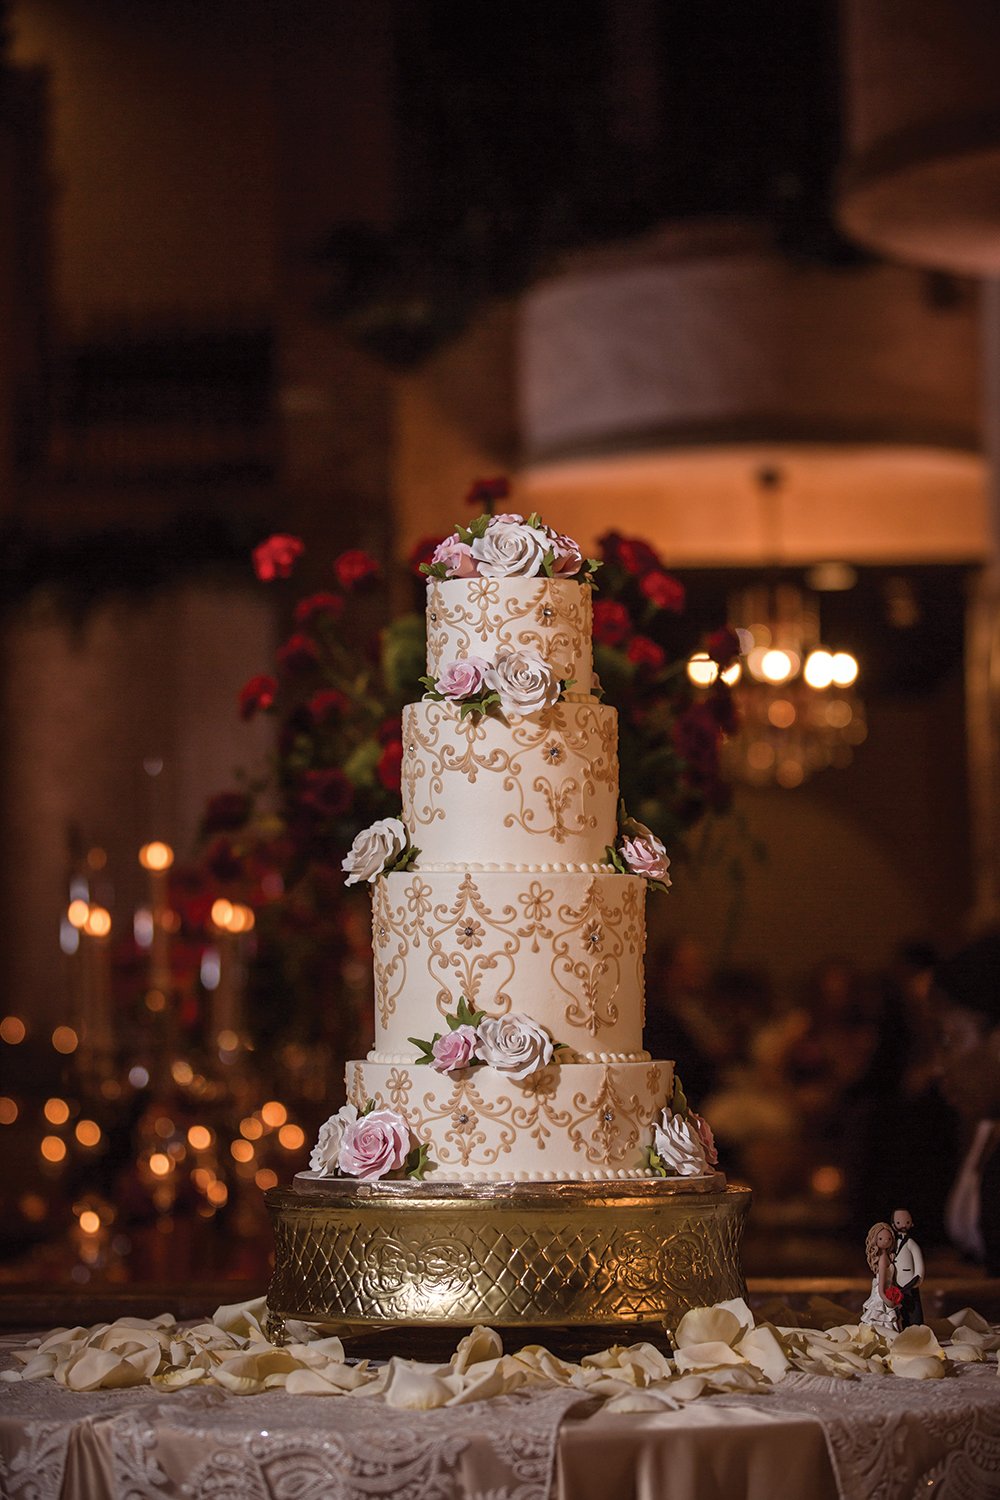 cakes by gina-wedding cake